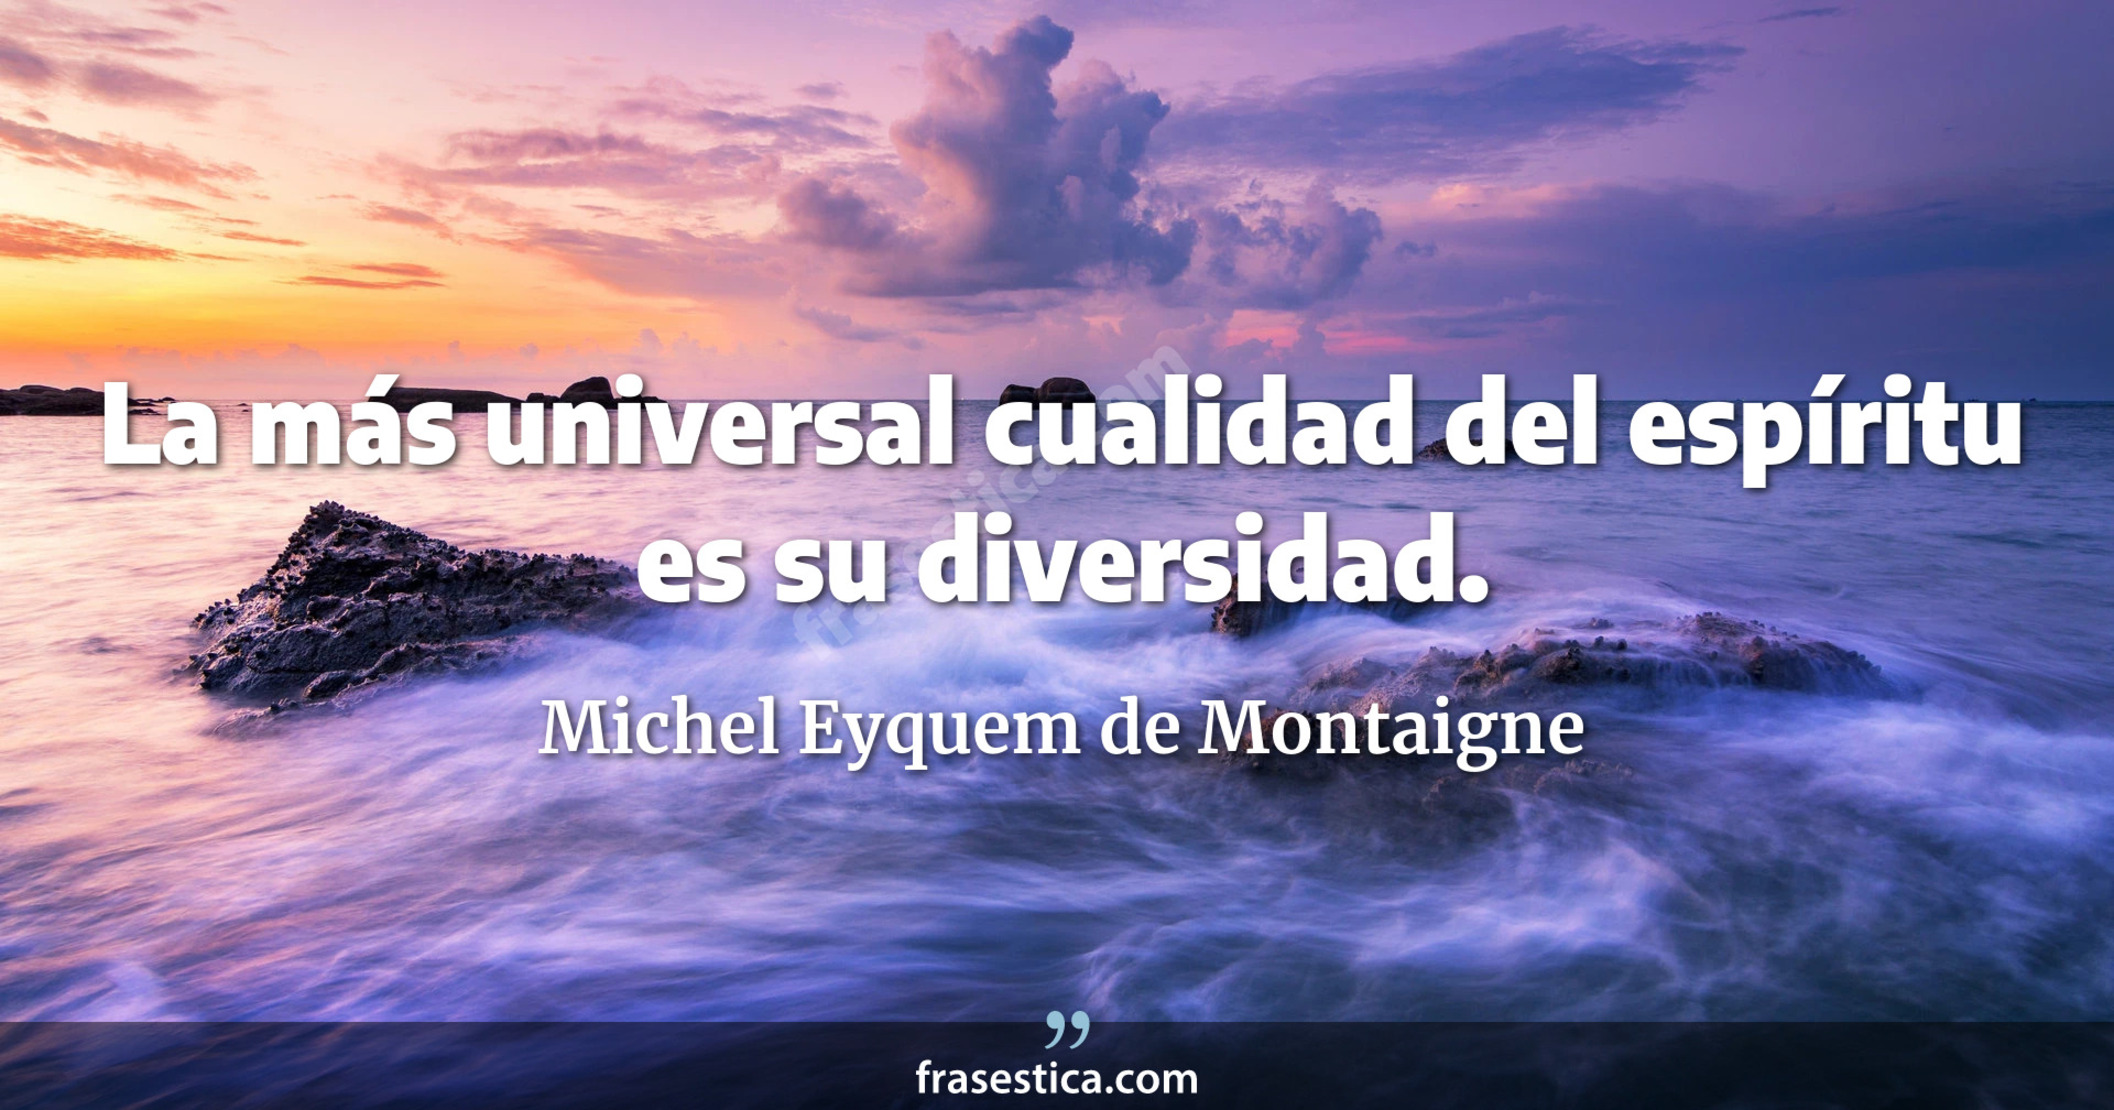 La más universal cualidad del espíritu es su diversidad. - Michel Eyquem de Montaigne